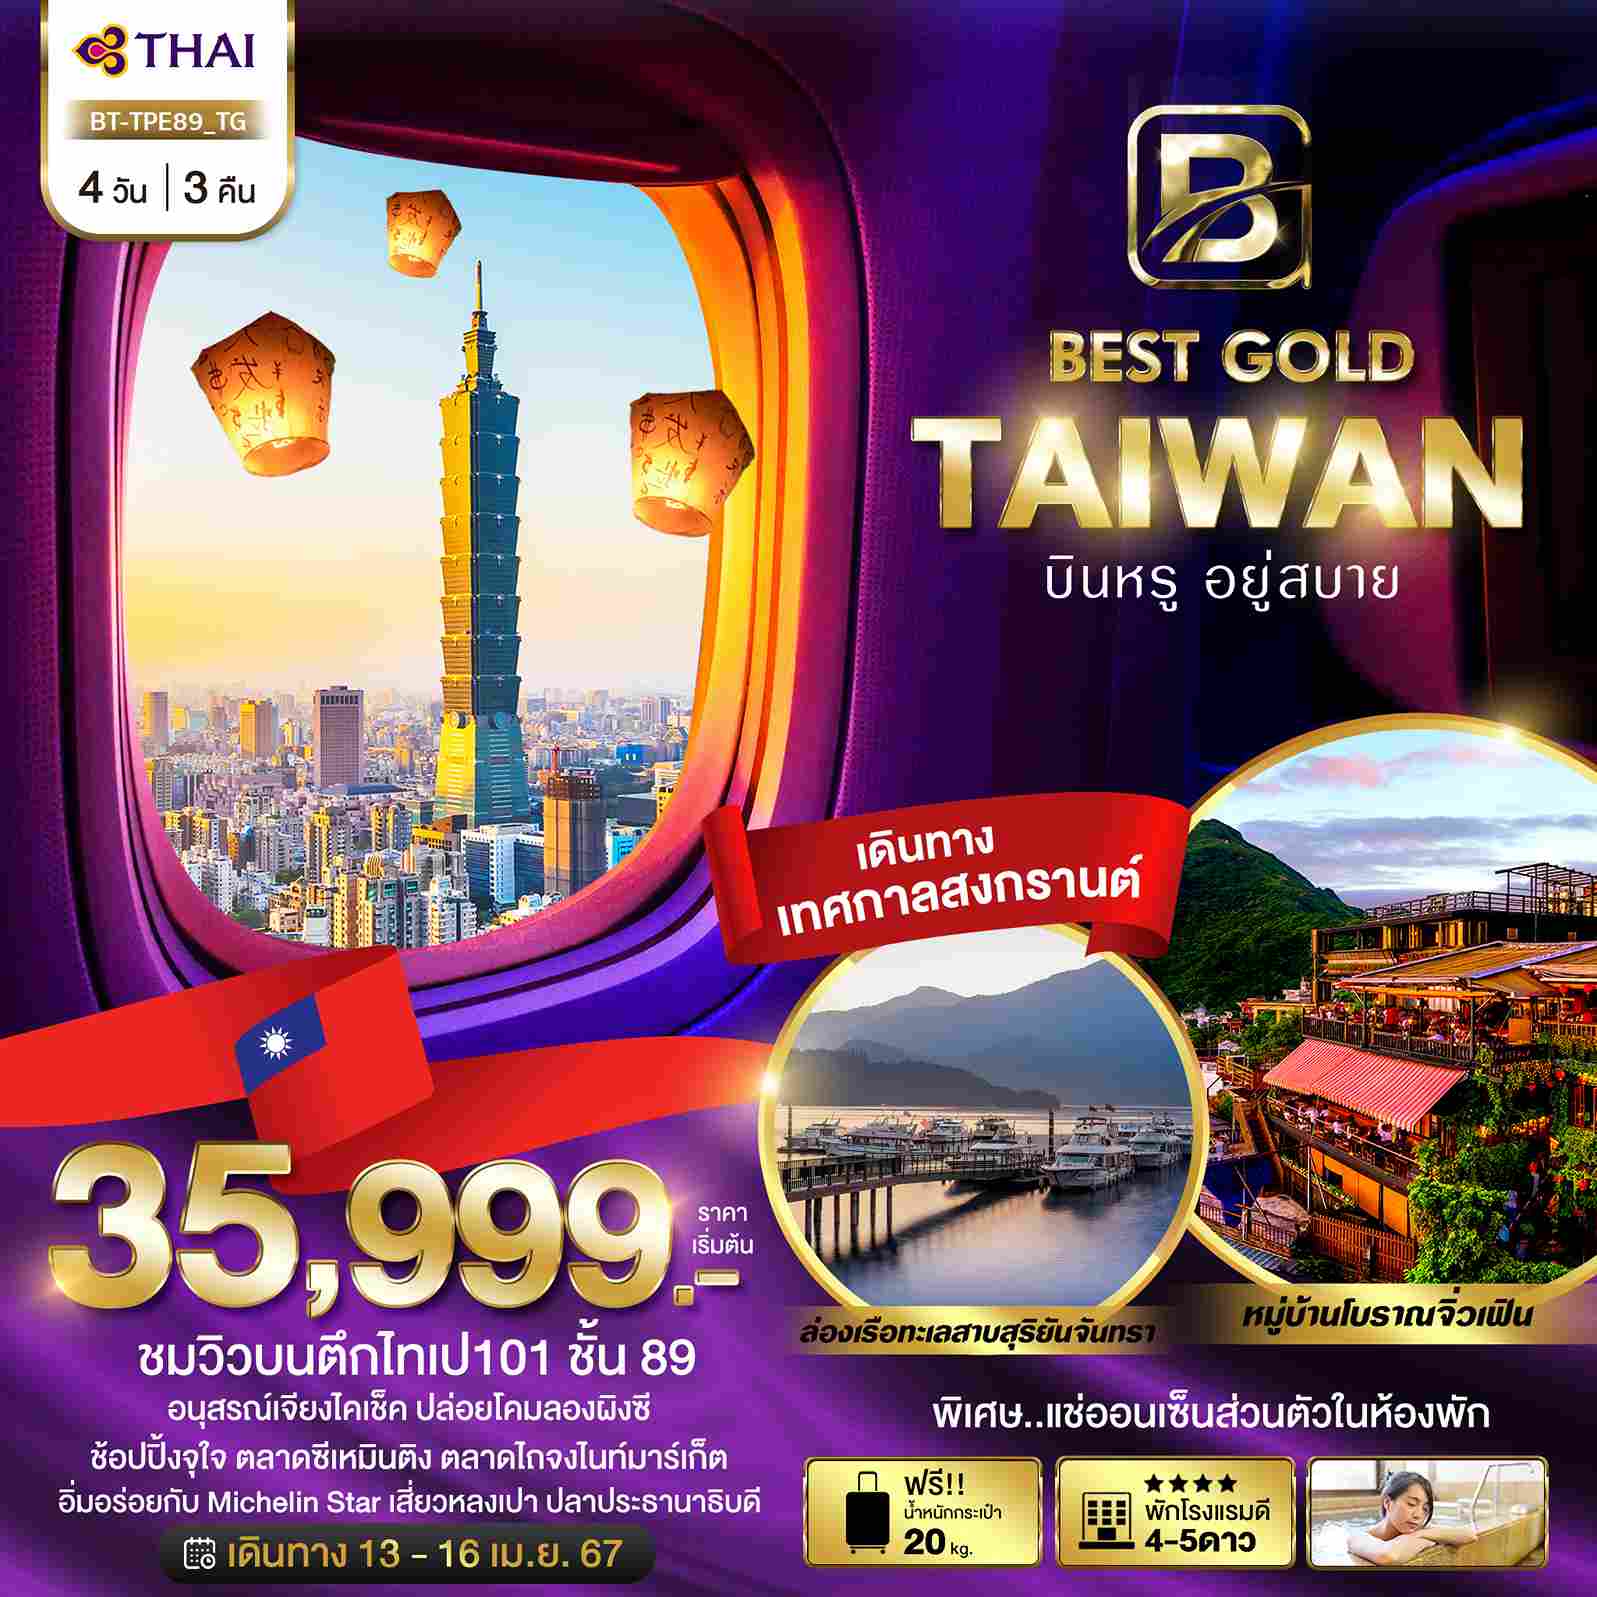 ทัวร์ไต้หวัน ATW245-02 BEST GOLD TAIWAN บินหรู อยู่สบาย (130467)